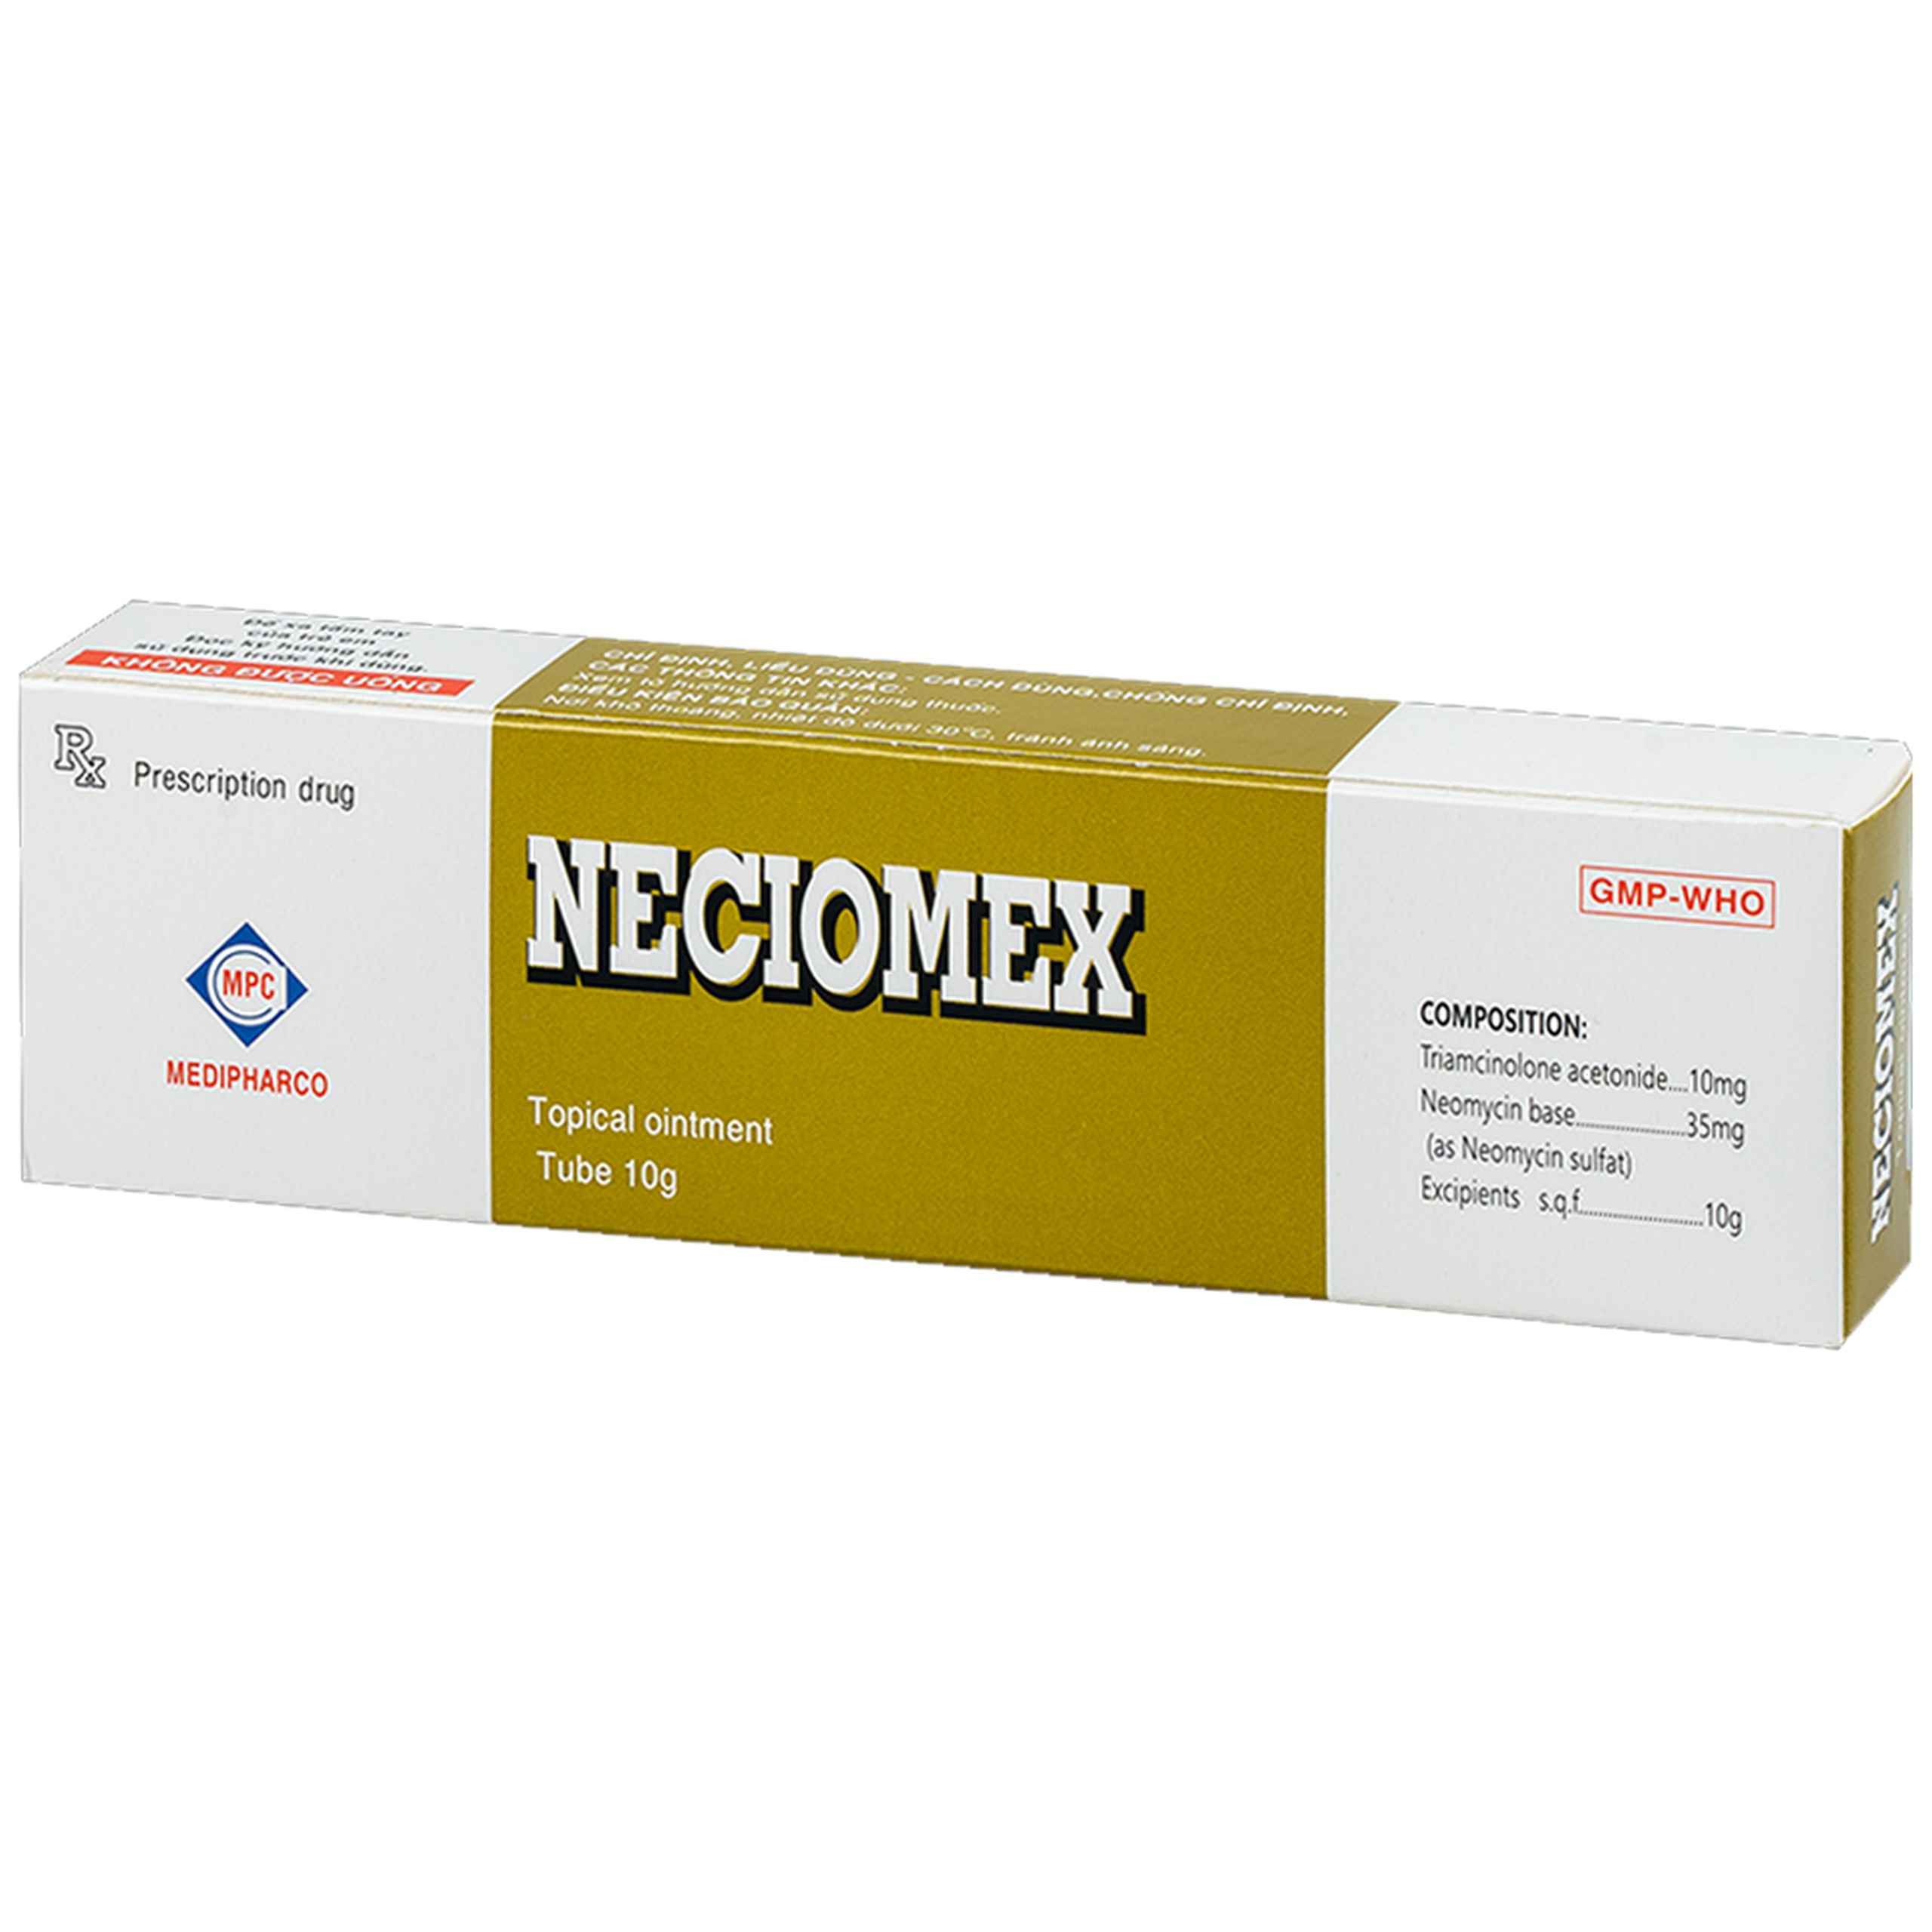 Thuốc mỡ bôi da Neciomex Medipharco điều trị các bệnh chàm, viêm da (10g)